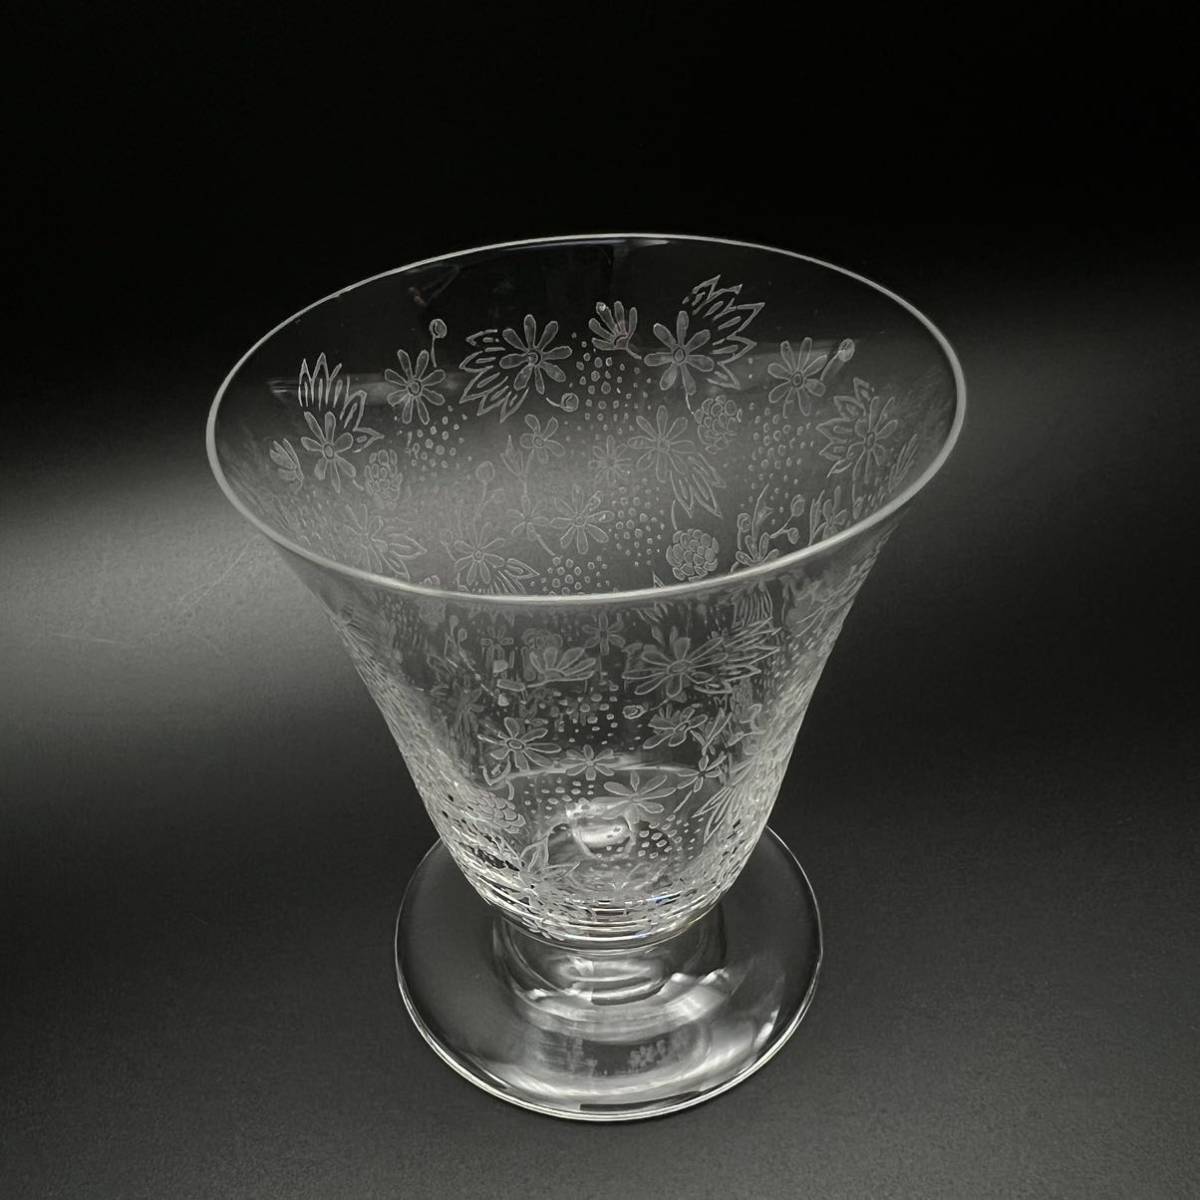 バカラ エリザベートBaccarat Elisabeth グラス 7cm 【1】 ゴブレット 冷酒 リキュール カクテル 果実酒 ミルフィオリ オールドバカラ_可愛らしいグラスです